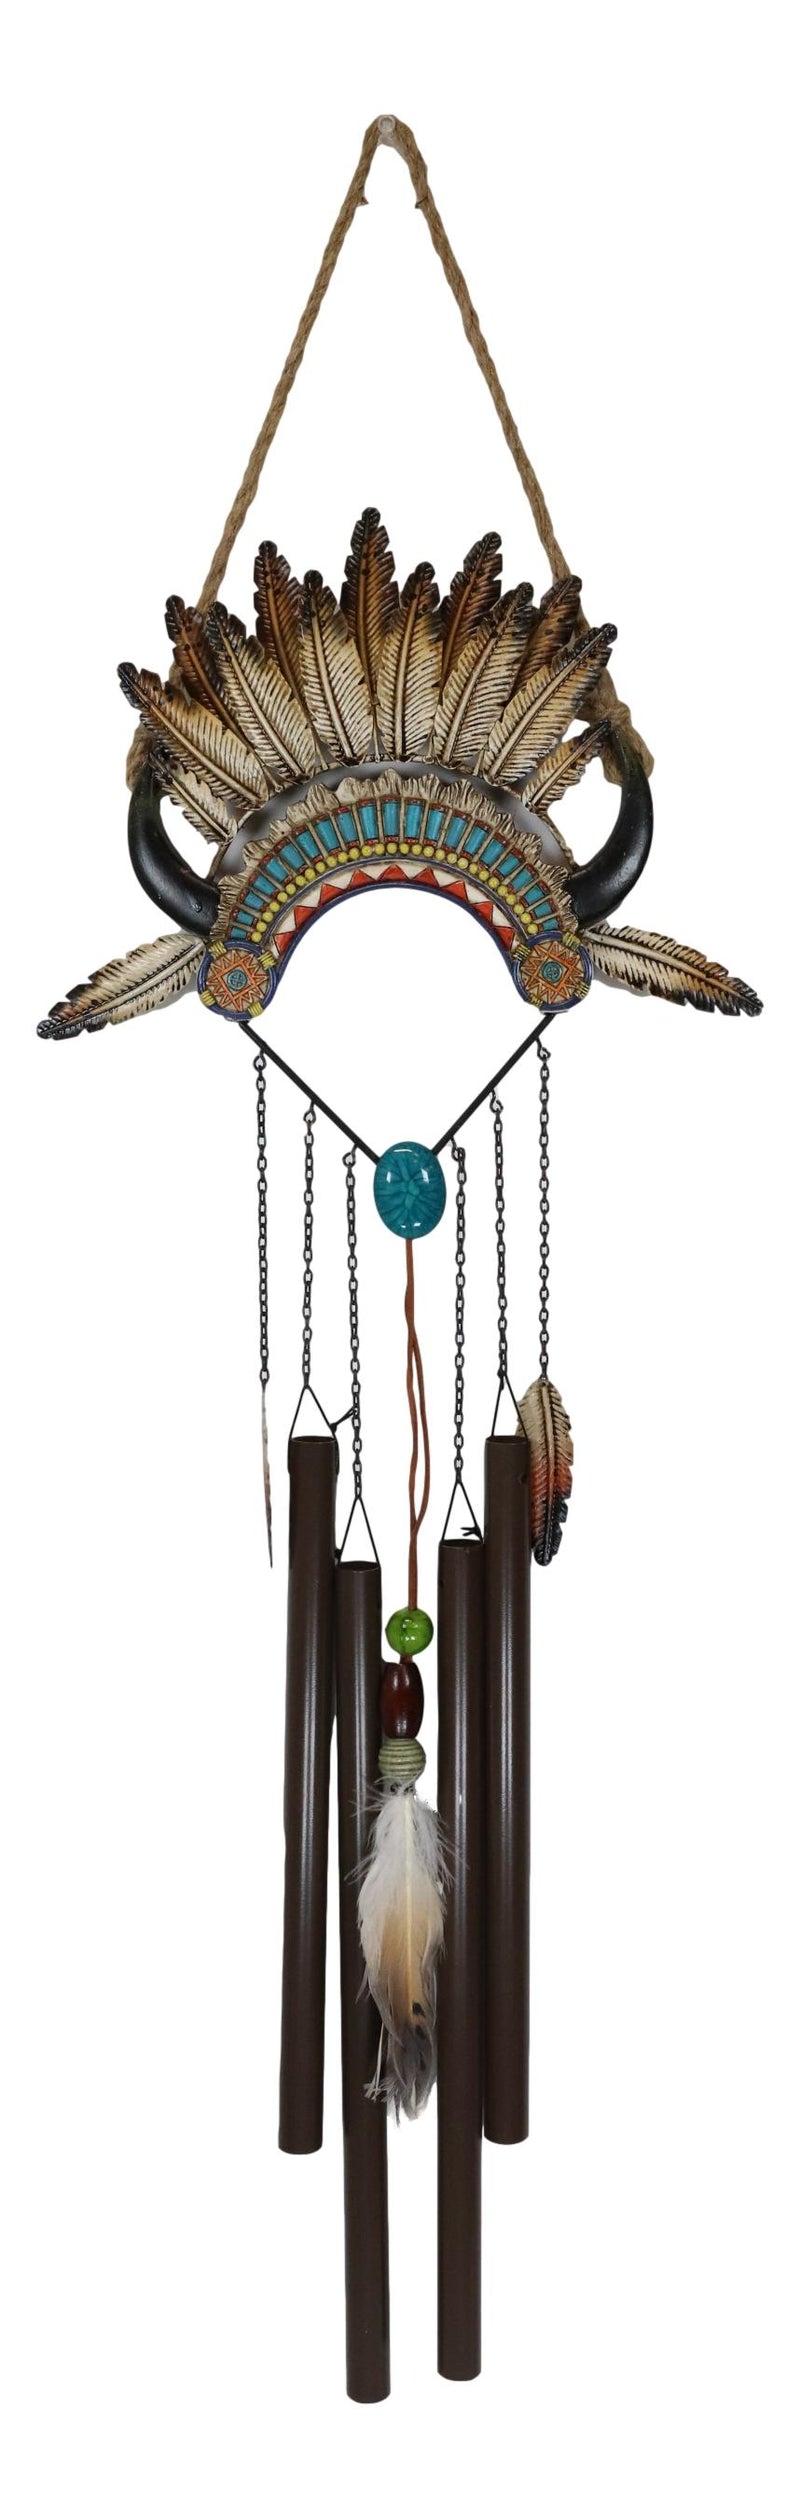 Southwest Boho Chic Indian Chief Headdress Feathers Turquoise Rocks Wind Chime